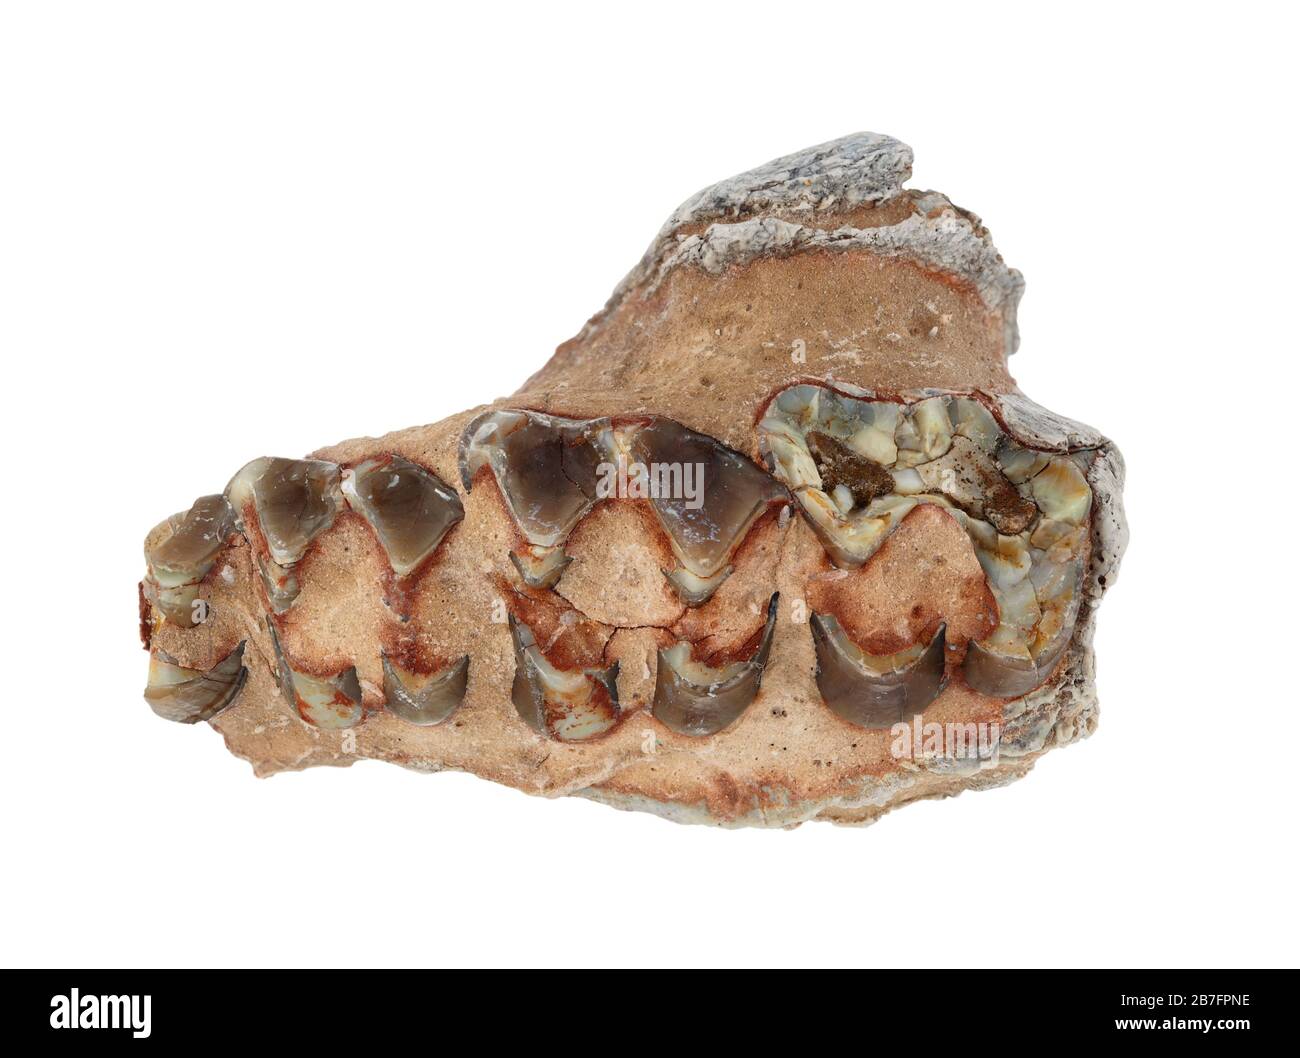 Denti fossili di un Oreodont (Merycoidodon) in matrice di pietra. Questi mammiferi erbivori estinti, simili a suini, vivevano nell'epoca tardo-eocenica fino all'epoca precoce del Miocene Foto Stock